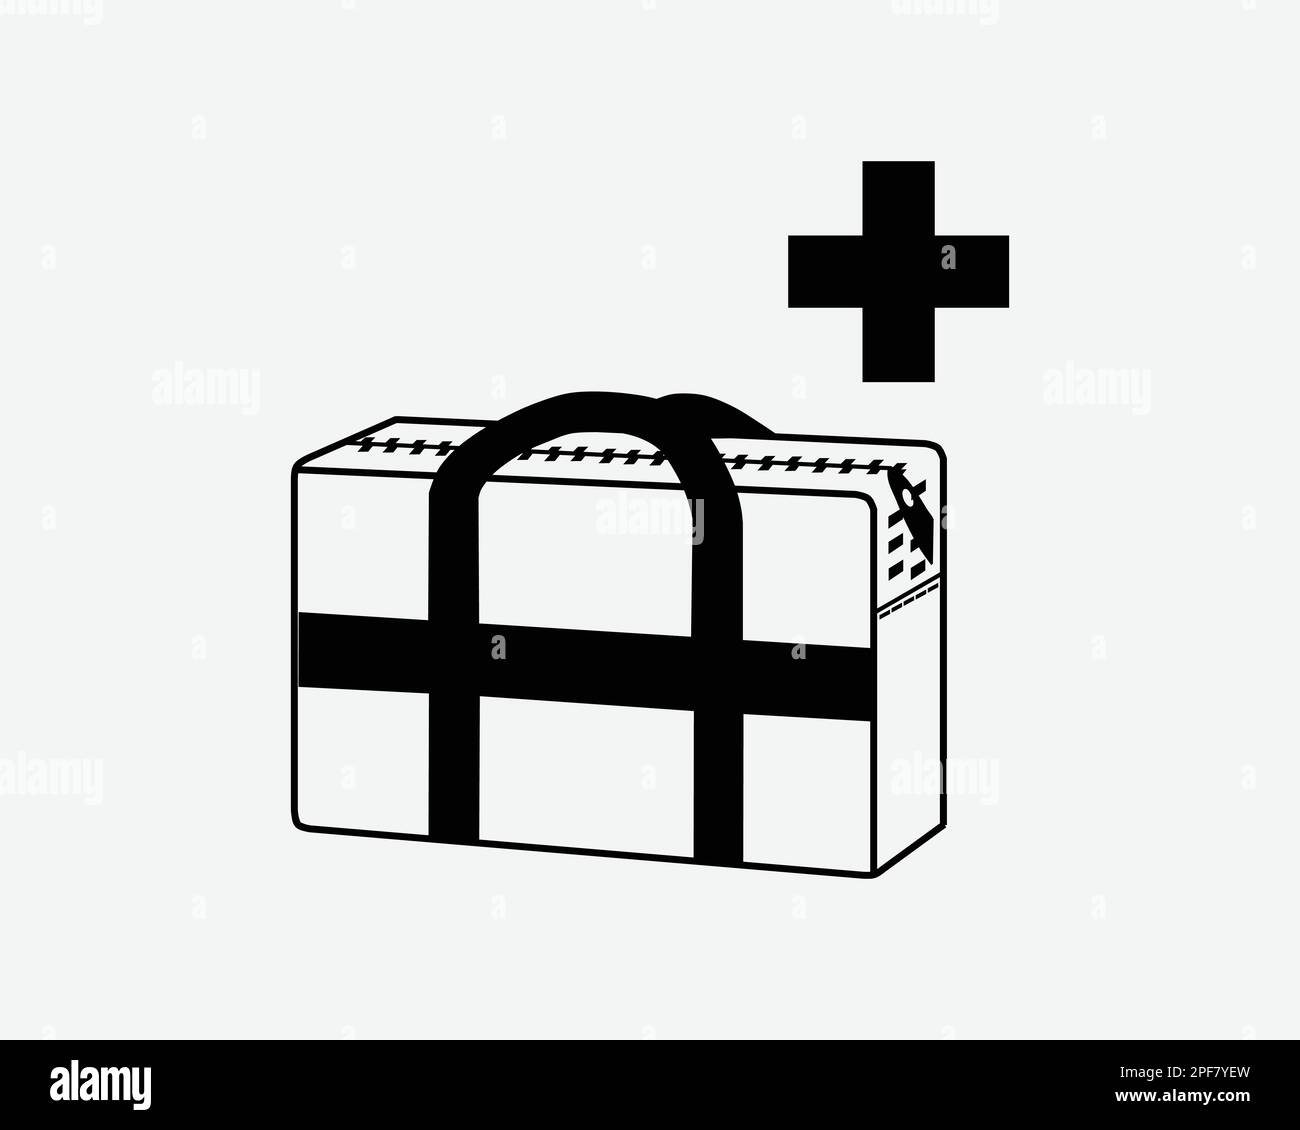 Medizingeräte Medic Zubehör Für Das Gesundheitswesen Tragen Erste Hilfe Schwarze Weiße Silhouette Symbol Symbol Grafik Clipart Bildmaterial Piktogramm Vektor Stock Vektor